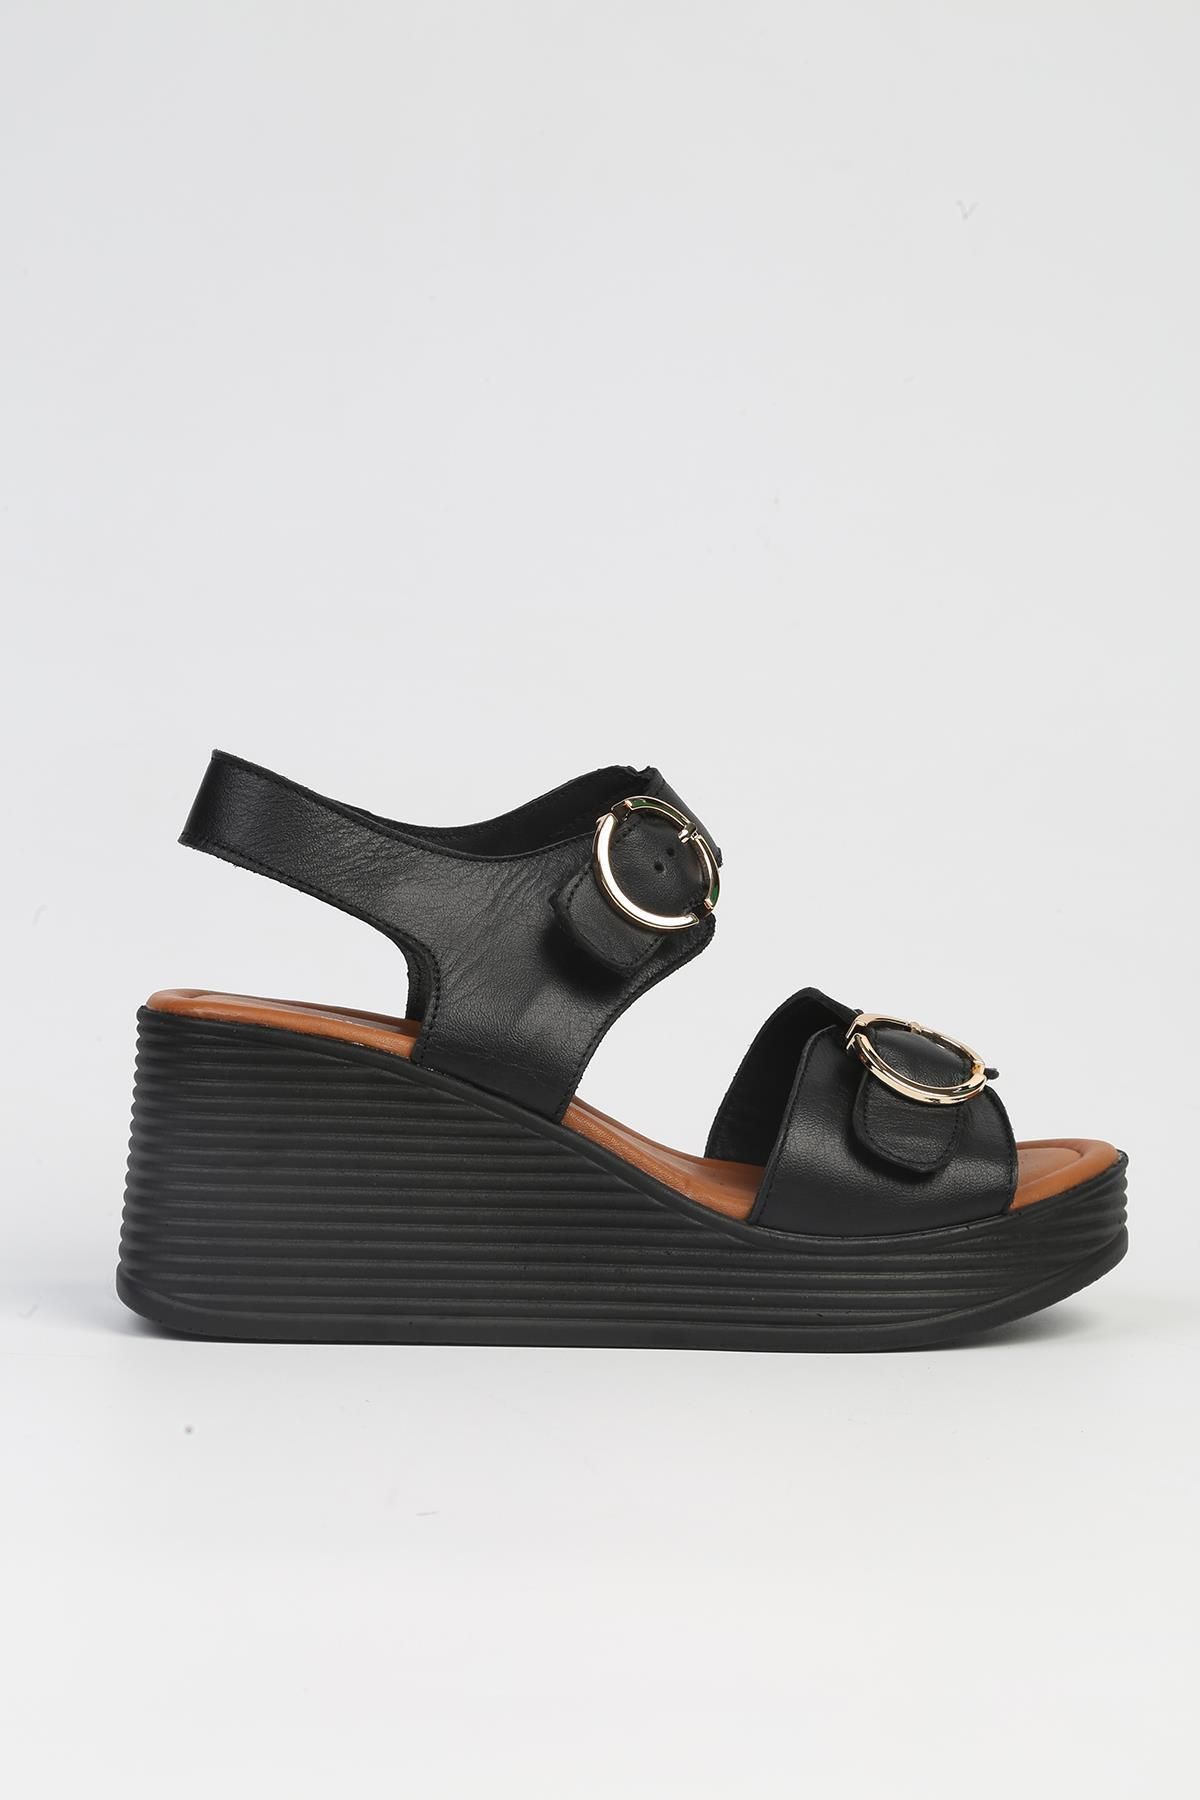 Pierre Cardin ® | PC-7213- Siyah-Kadın Dolgu Topuk Ayakkabı